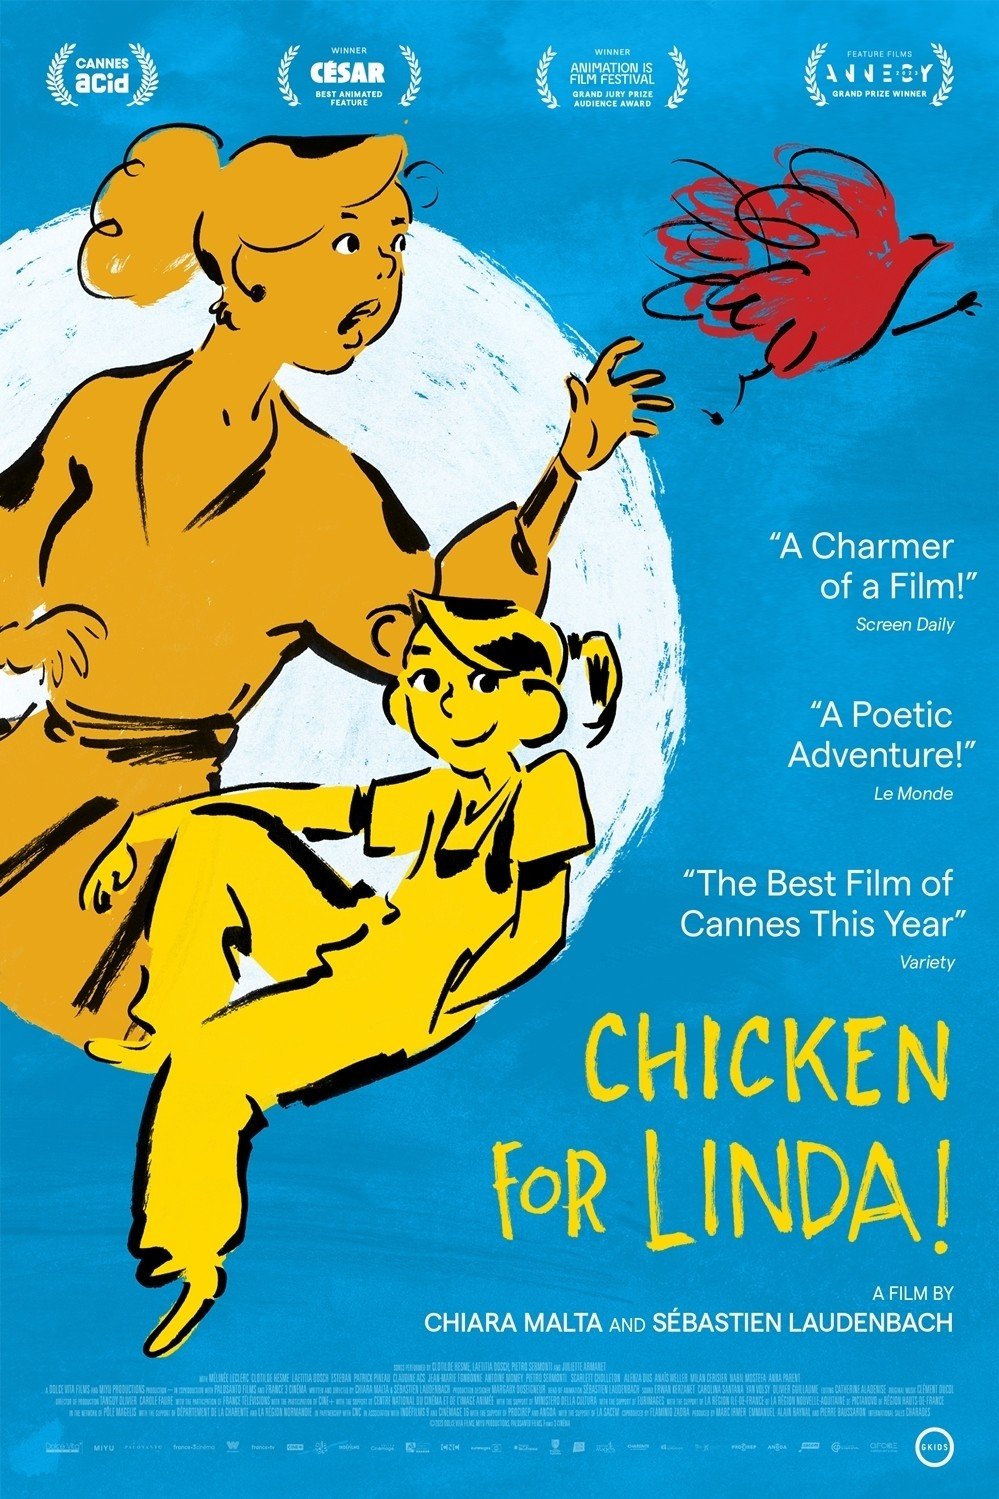 Chicken for Linda! (Linda veut du poulet!)